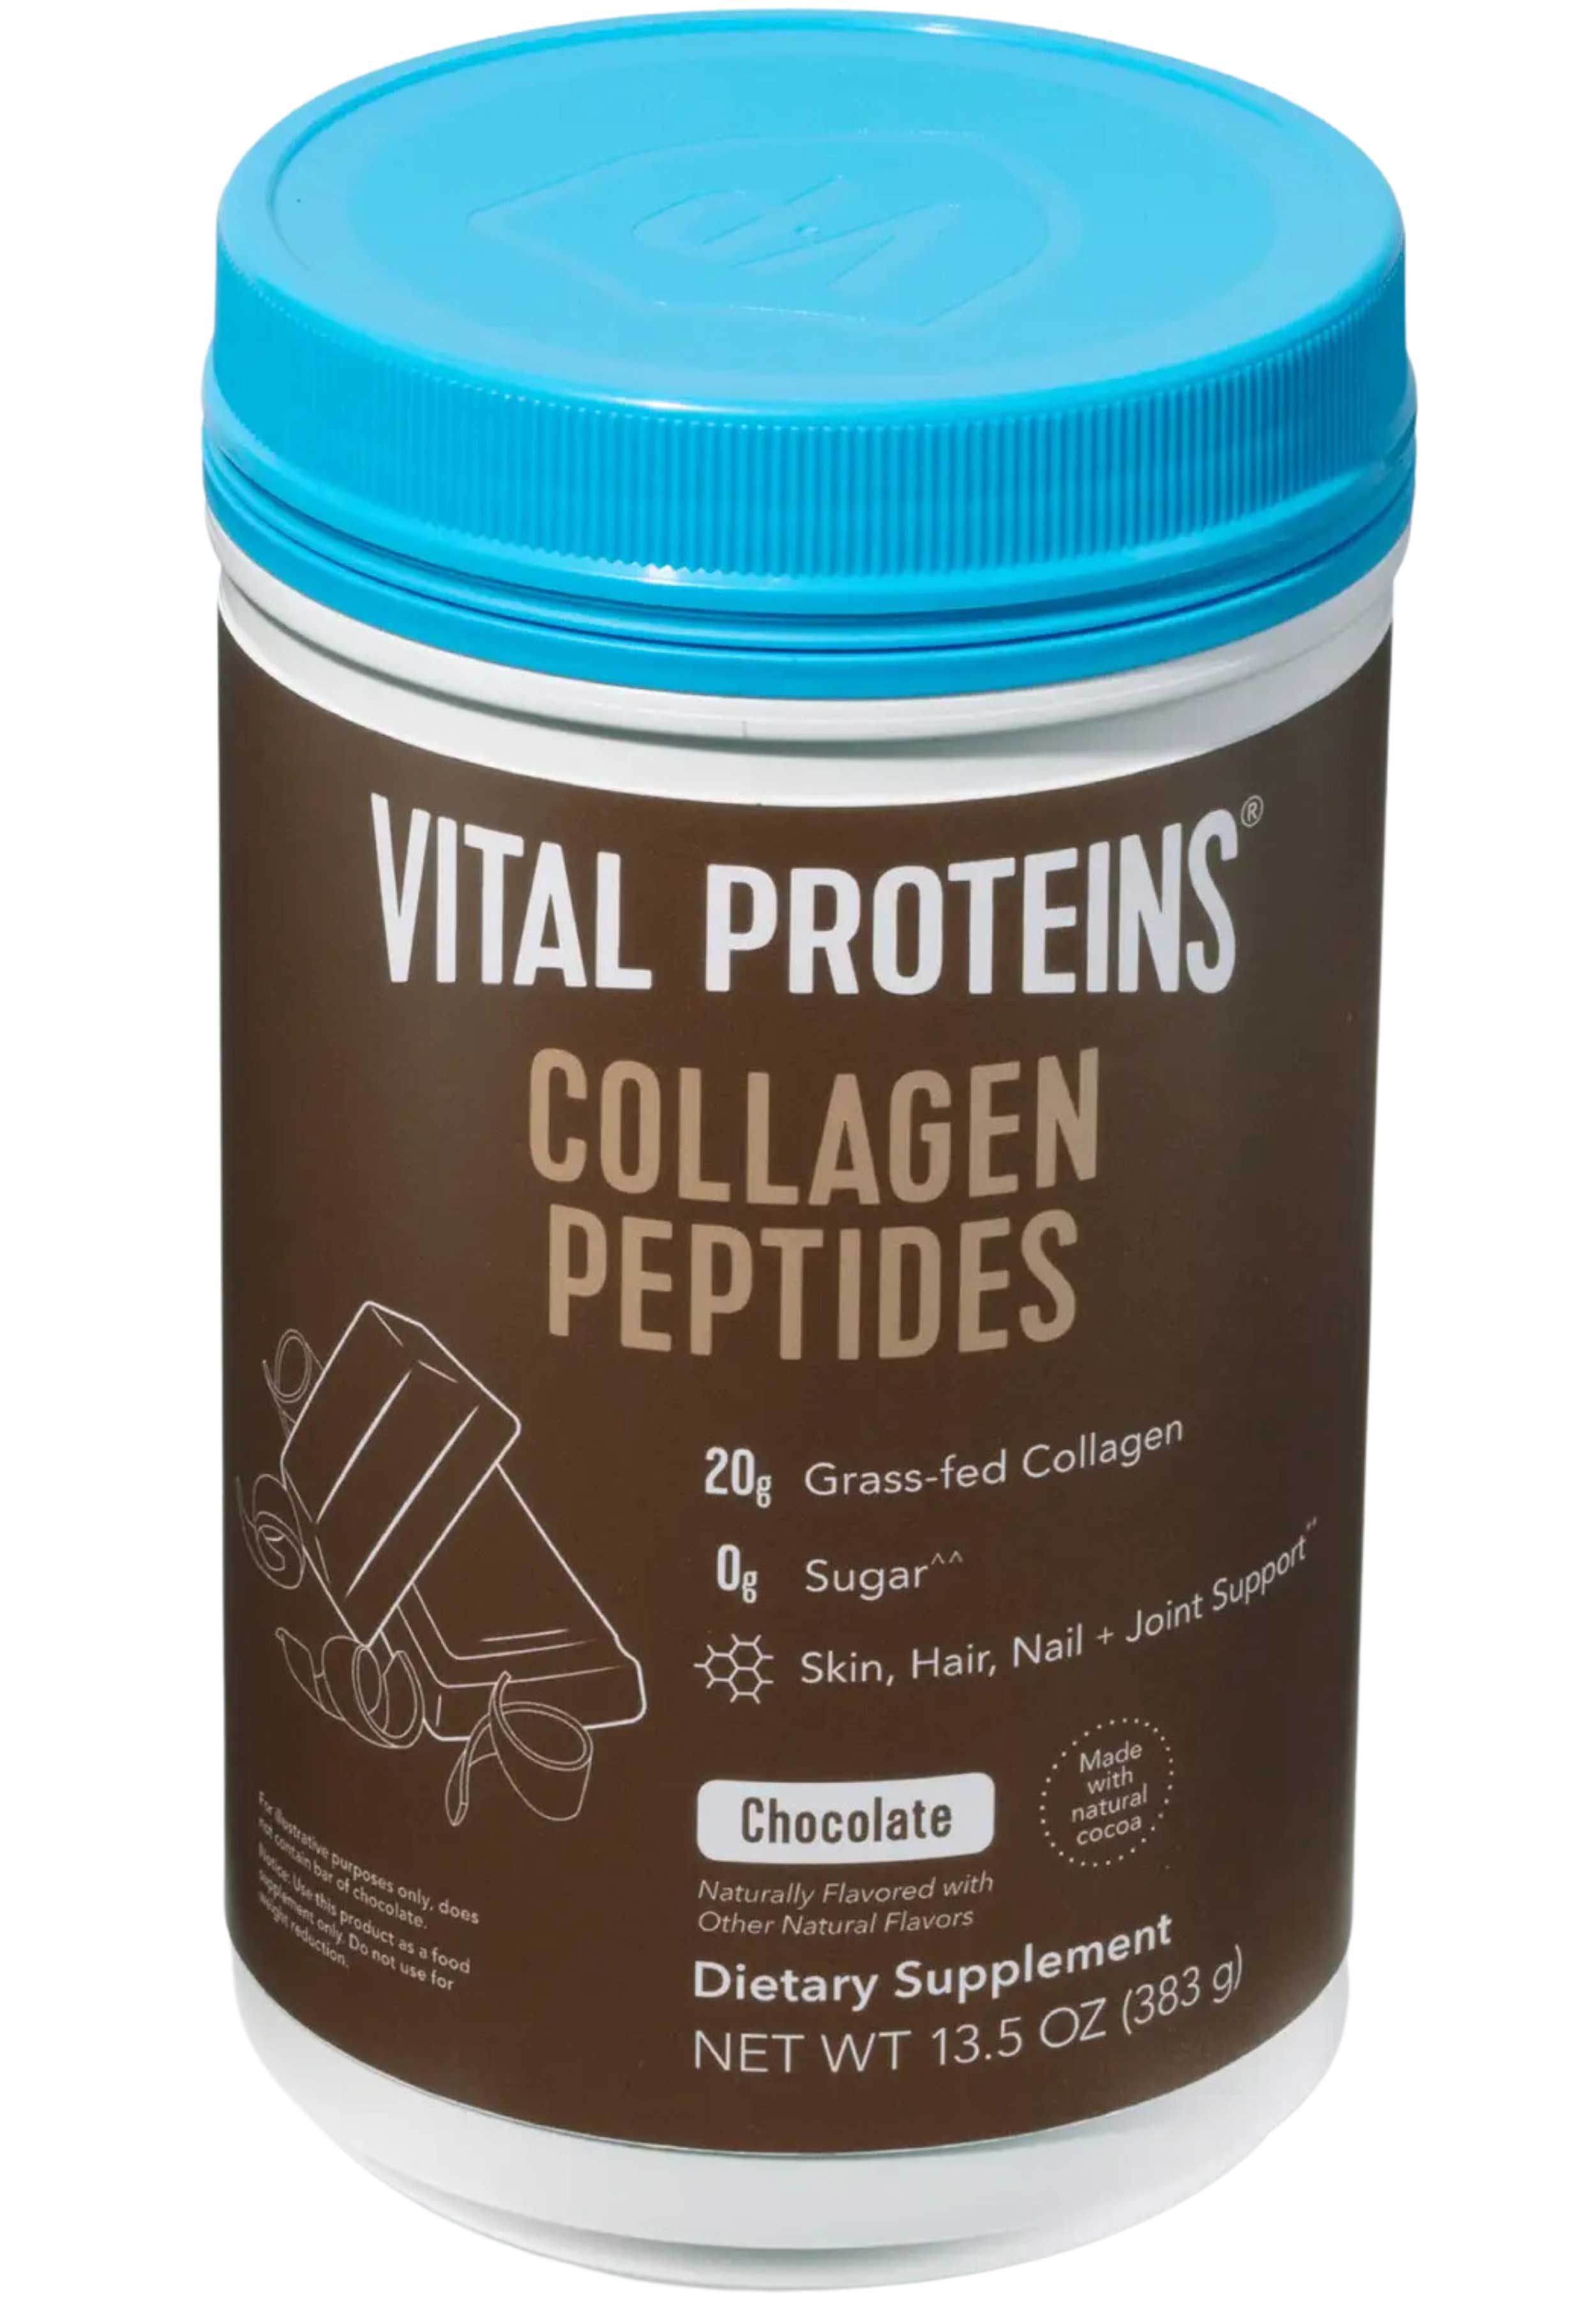 Vital Proteins Collagen Peptides Chocolate Powder